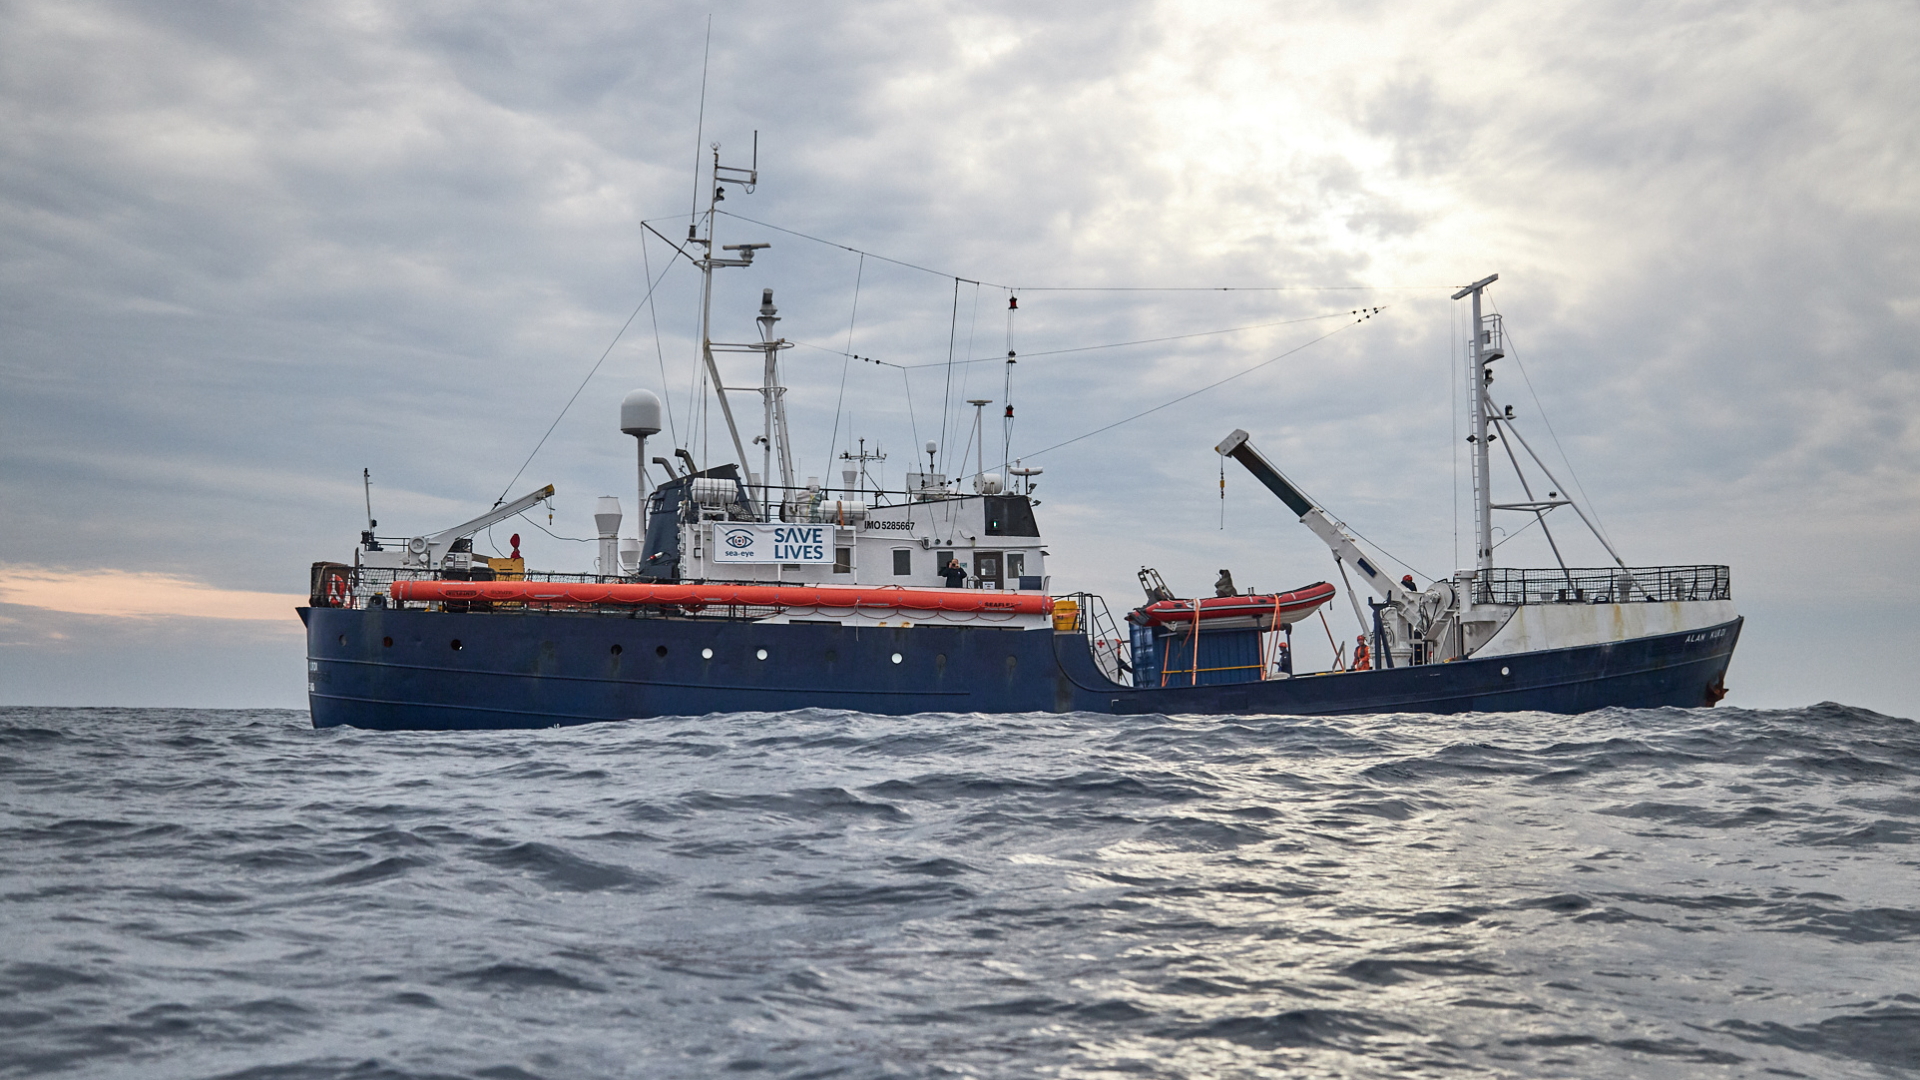 Das Rettungsschiff "Alan Kurdi" der Regensburger Hilfsorganisation Sea-Eye rettet im Mittelmeer Flüchtlinge. | FABIEN HEINZ/SEA-EYE.ORG